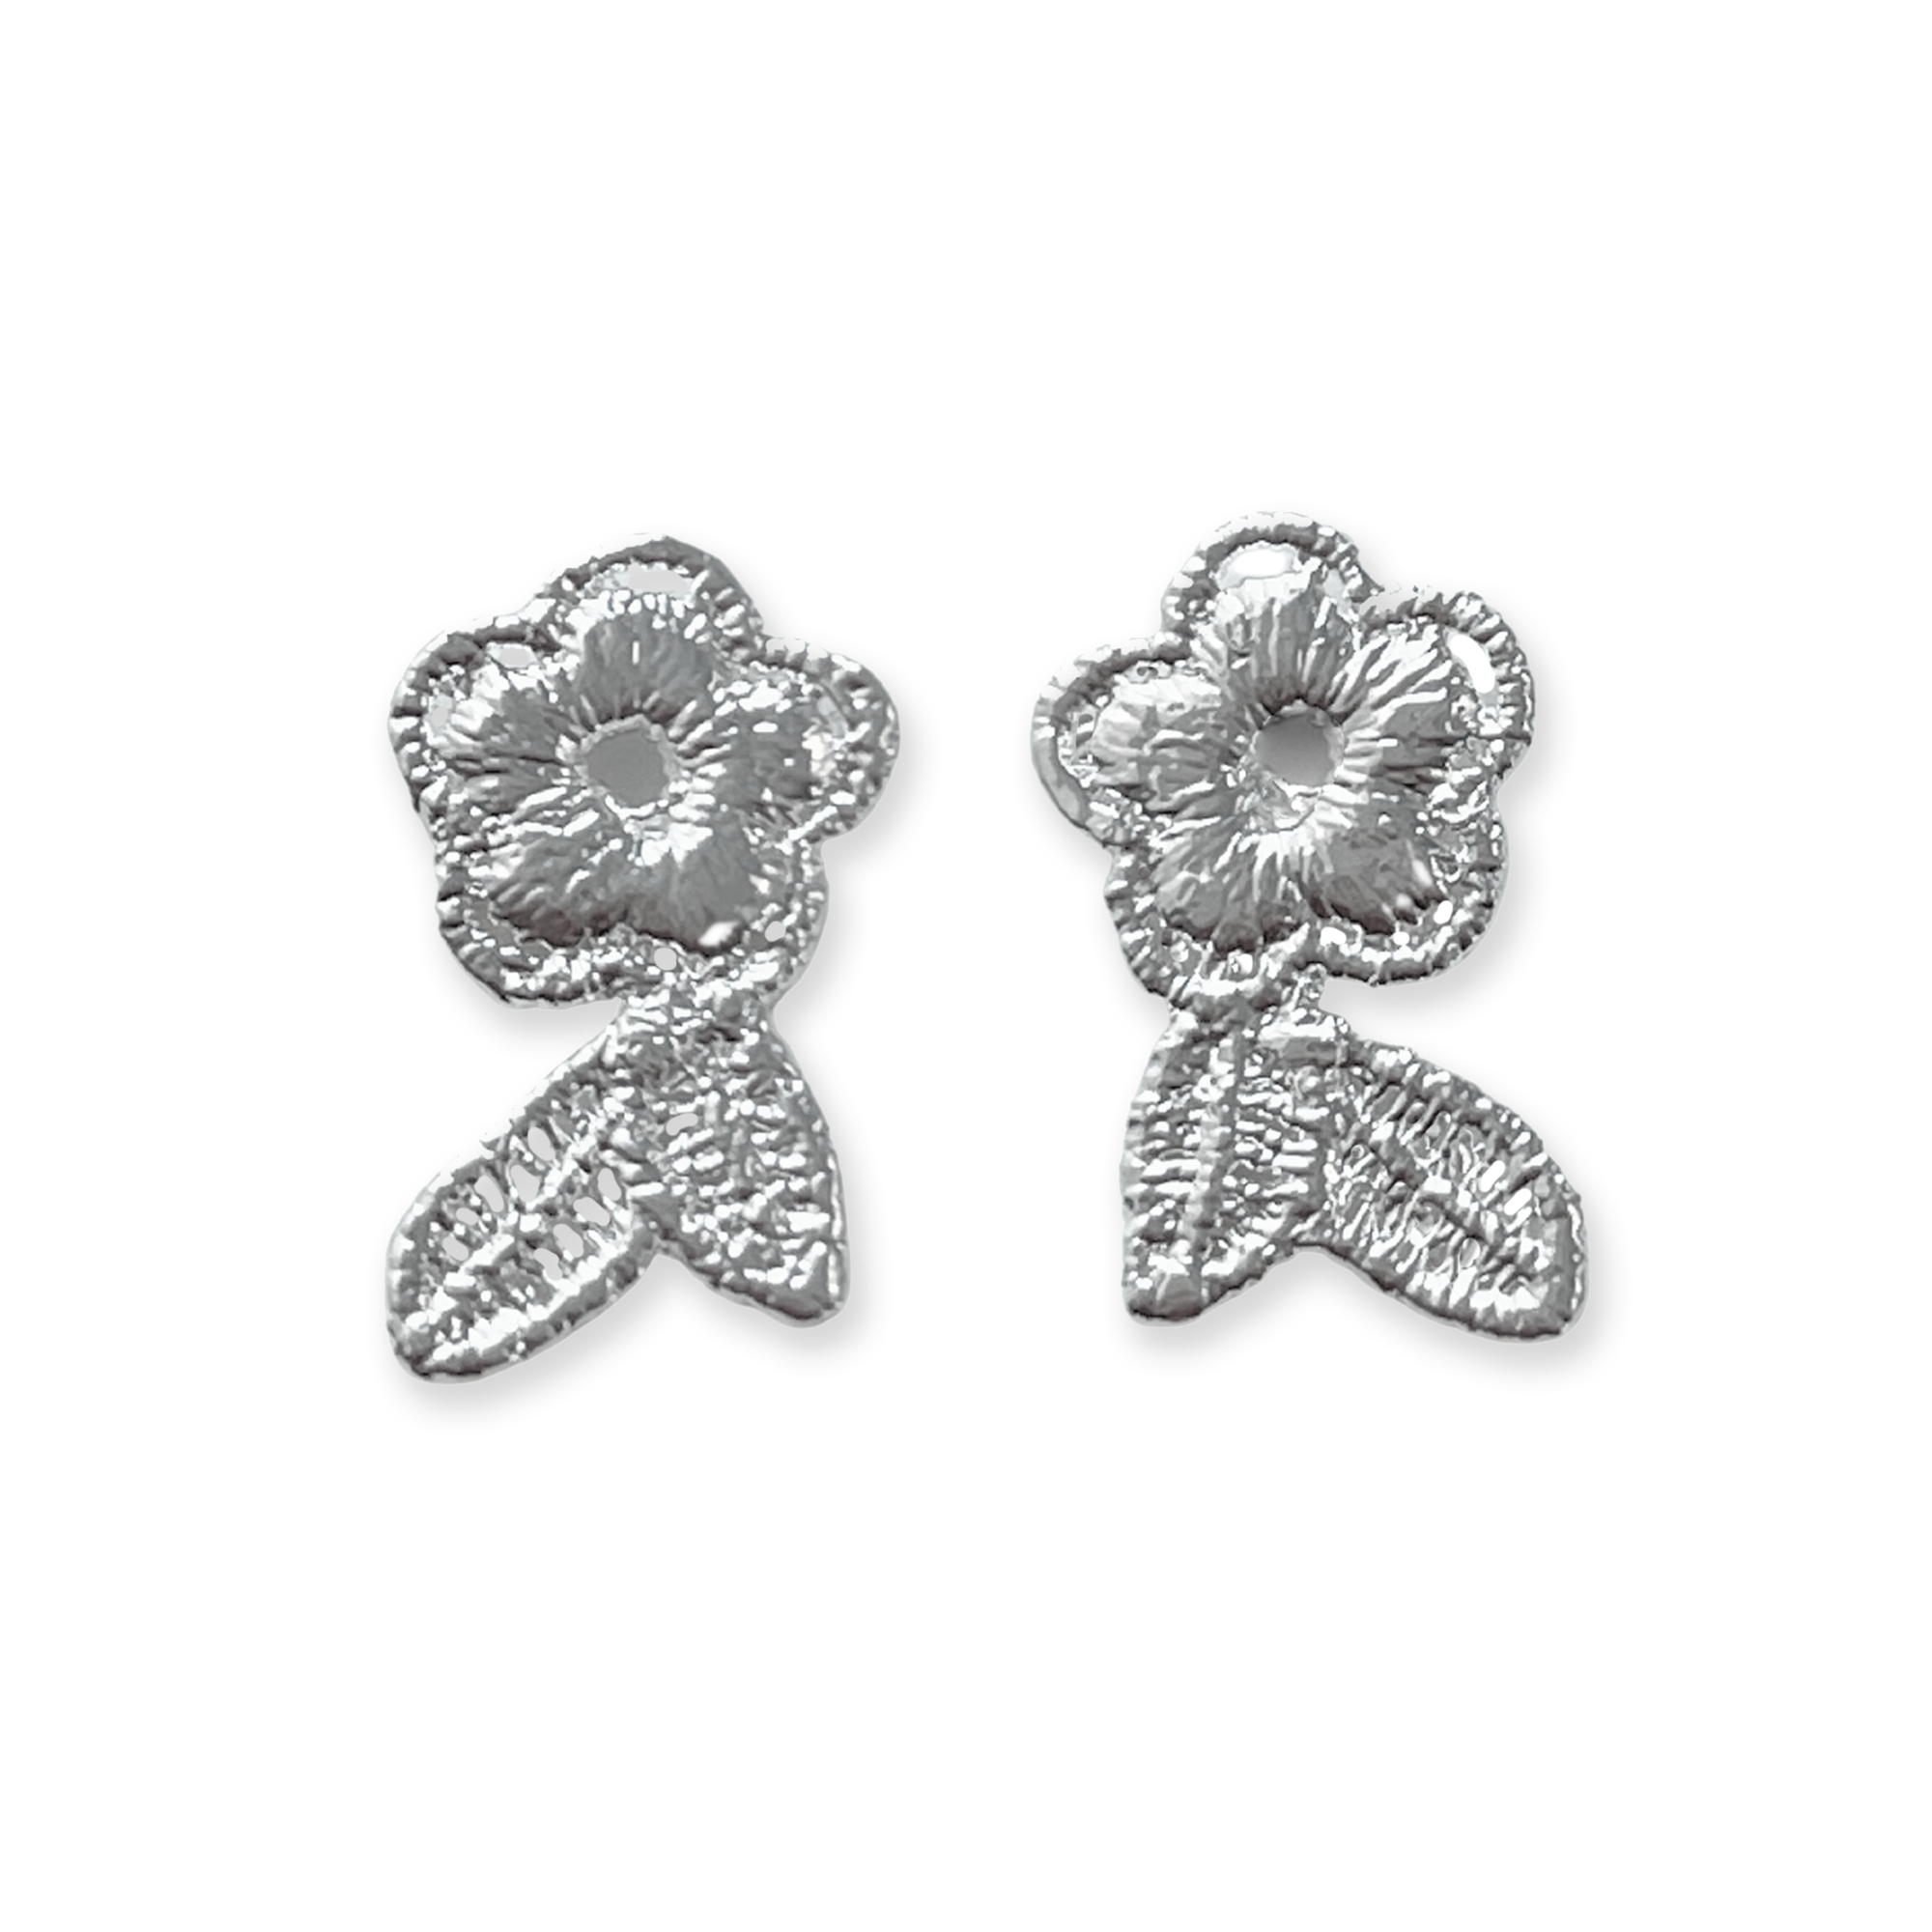 Flower lace stud earrings in 24k gold.